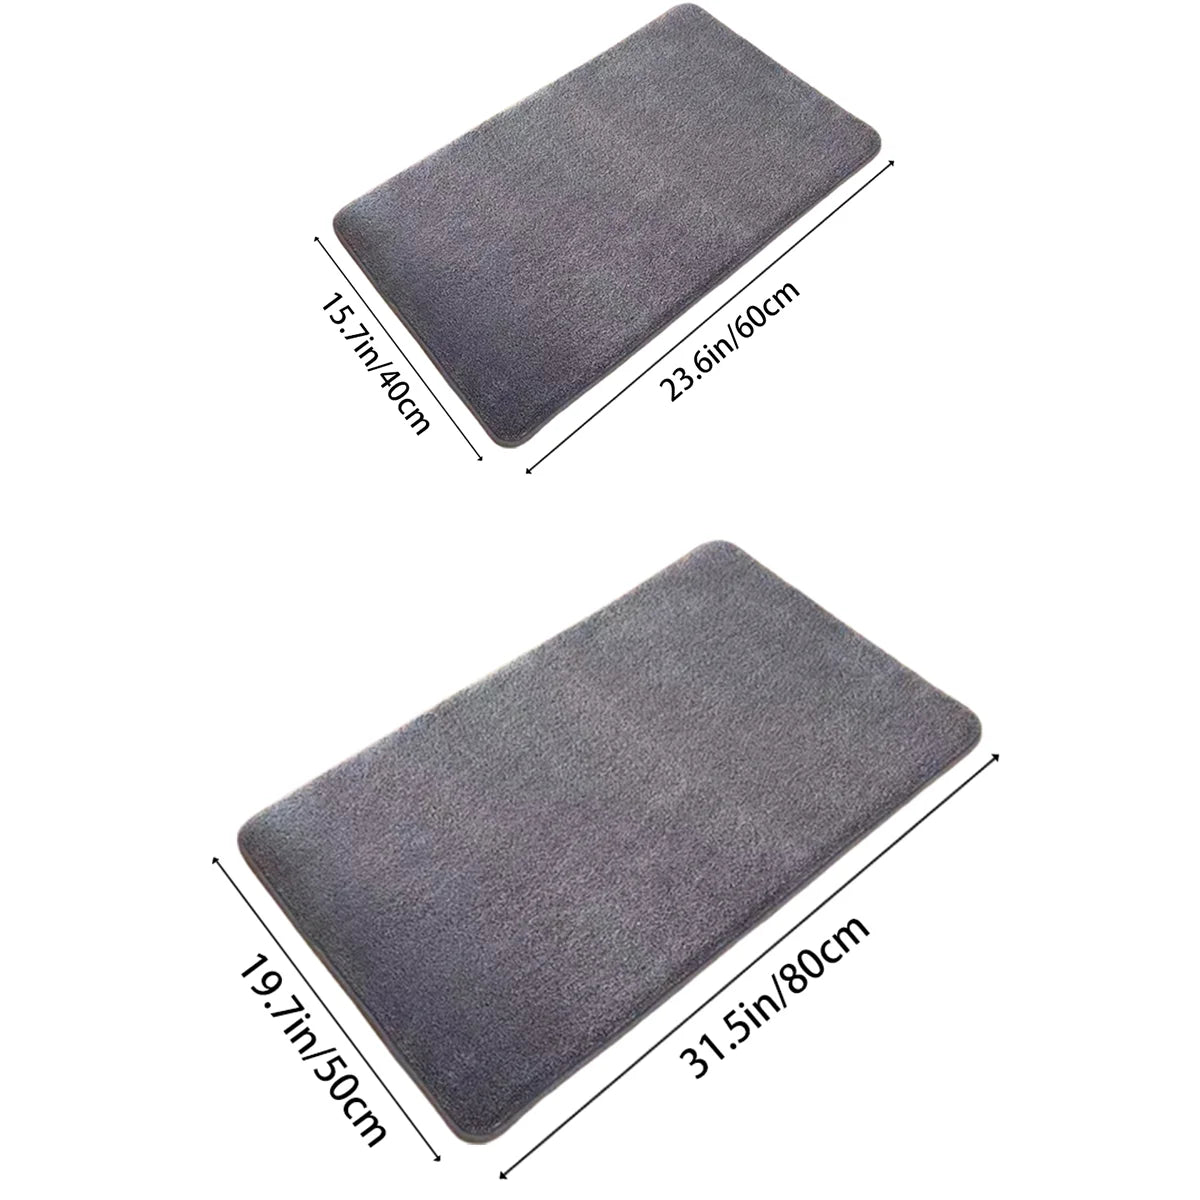 Super absorbent bath floor mat by PureSoft